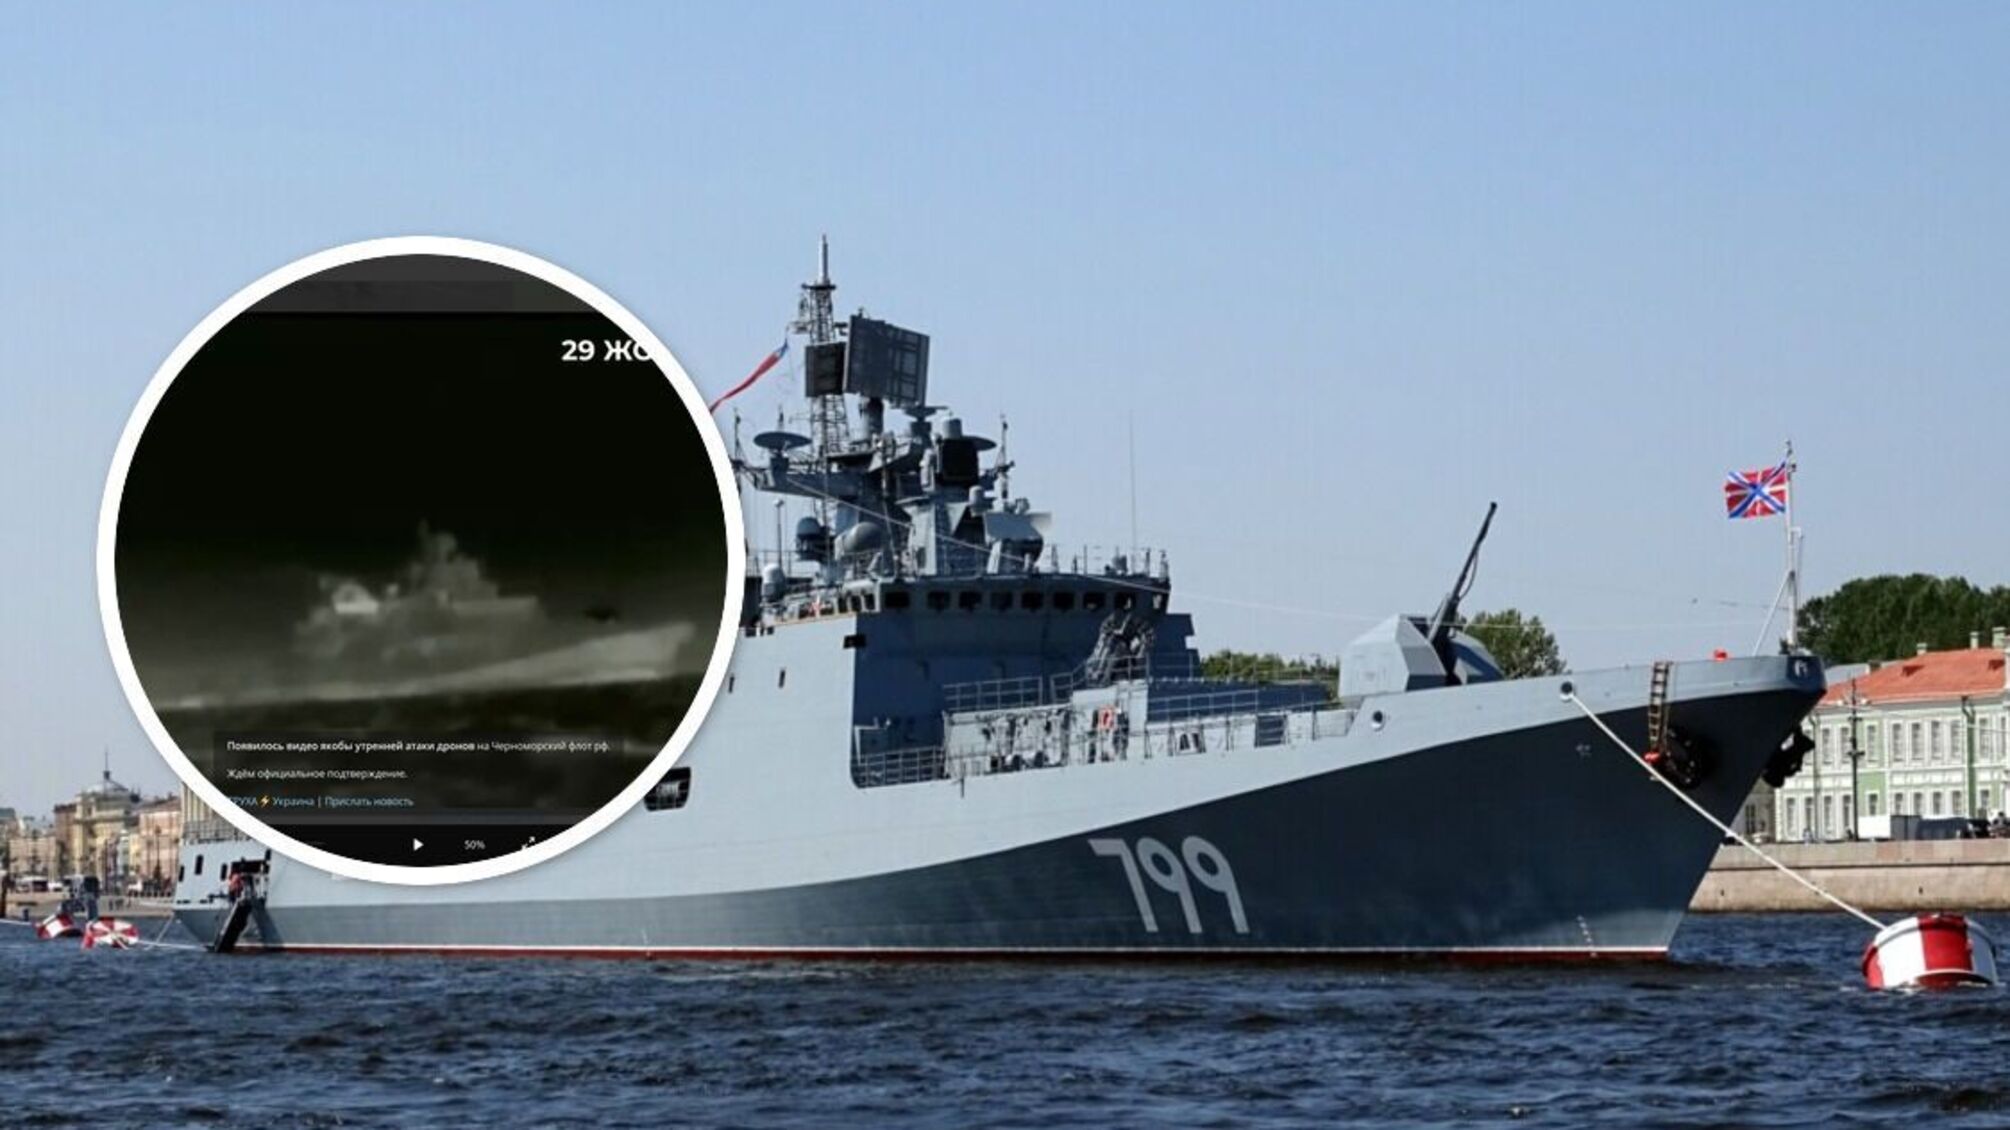 Вибухи у Севастополі: з'явились кадри з кораблями, які потрапили під удар (відео)